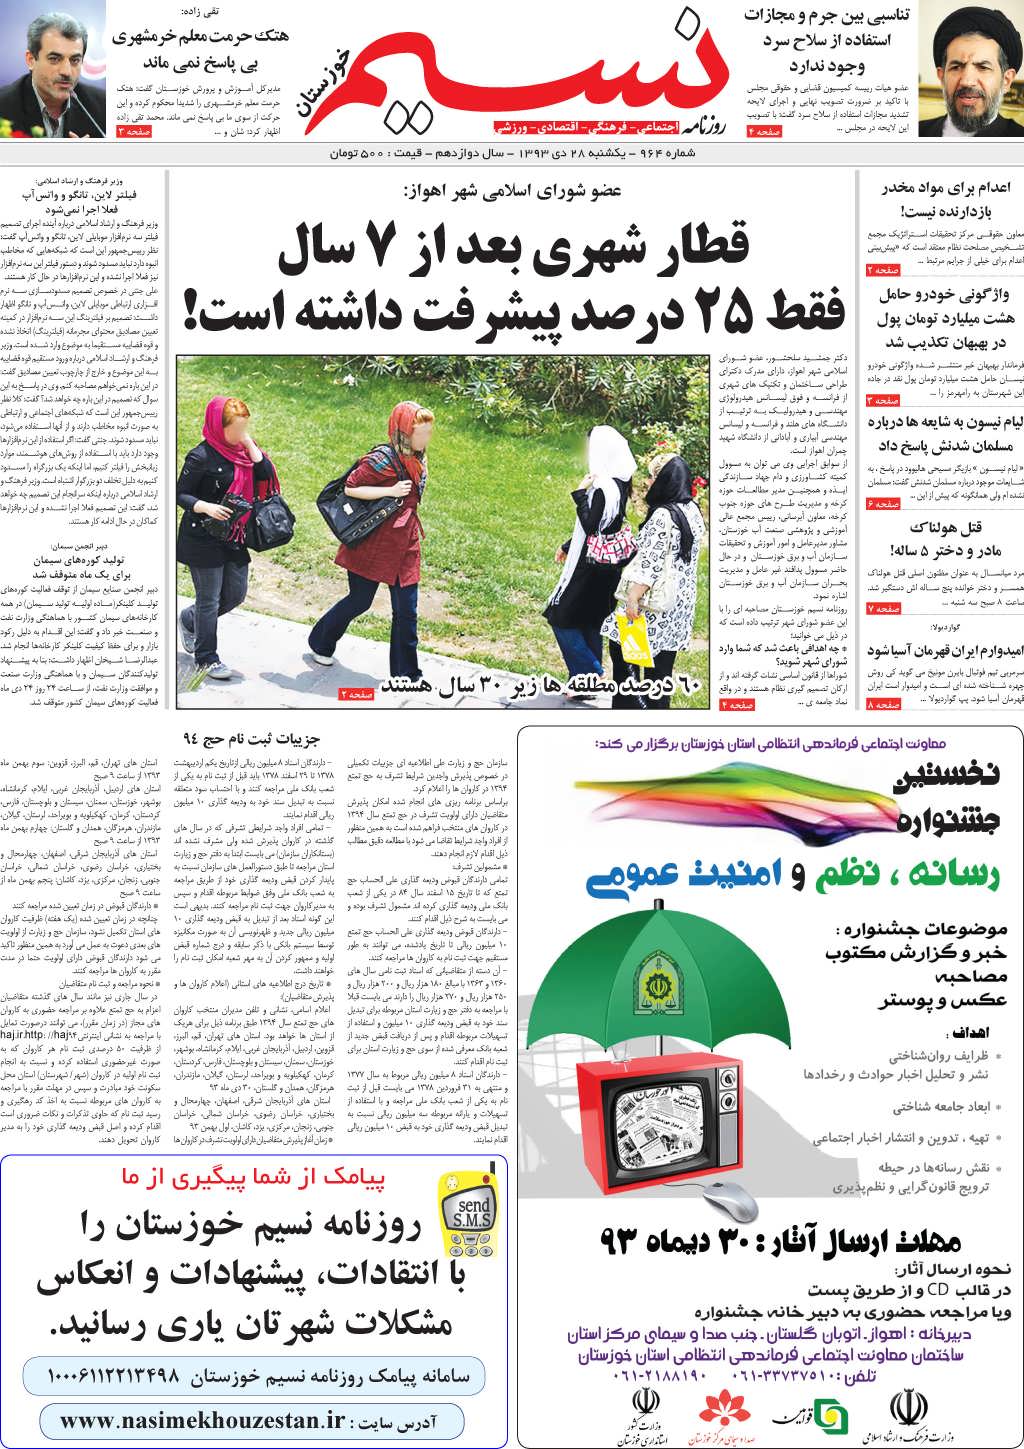 صفحه اصلی روزنامه نسیم شماره 964 